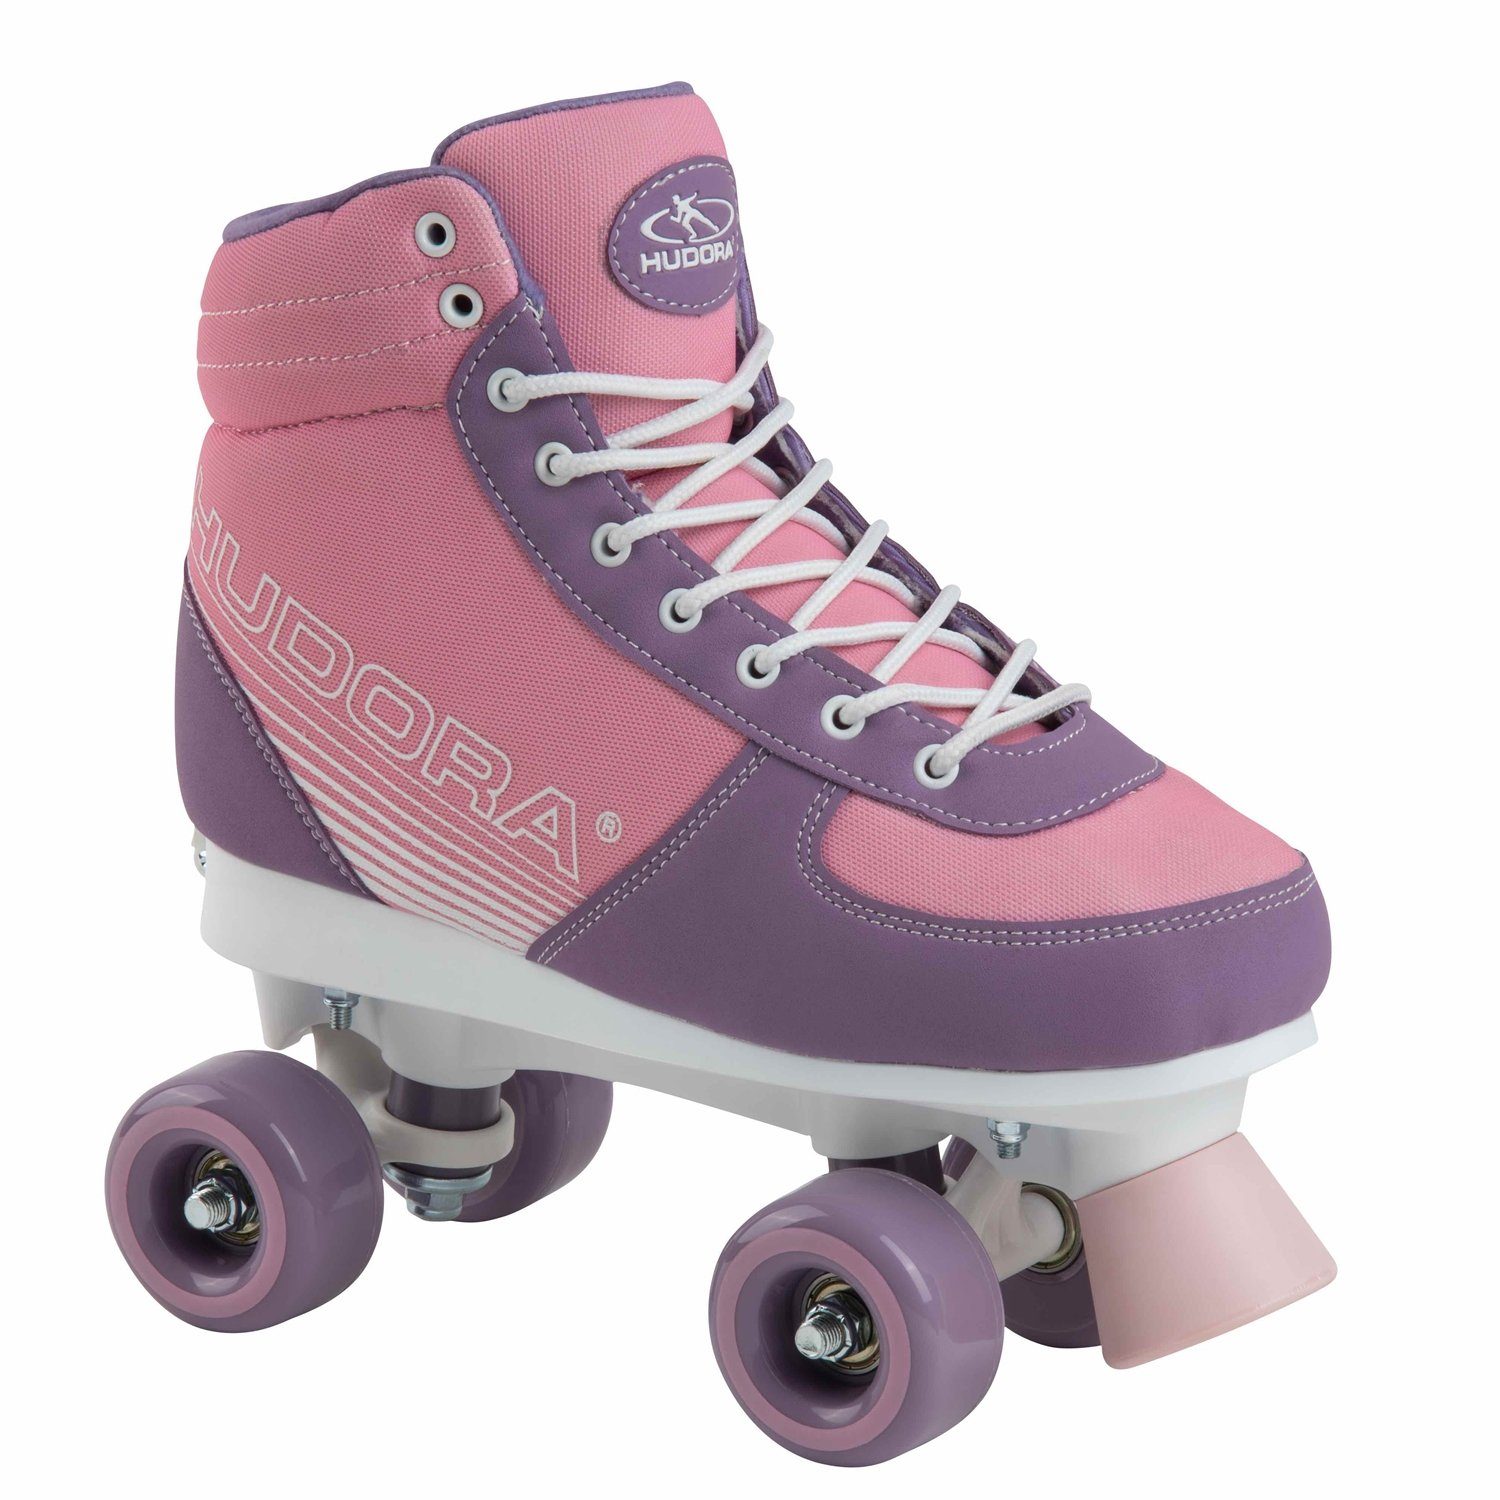 Hudora Scooter 13126 Blush Inline pink Advanced Gr:35-38 Skates